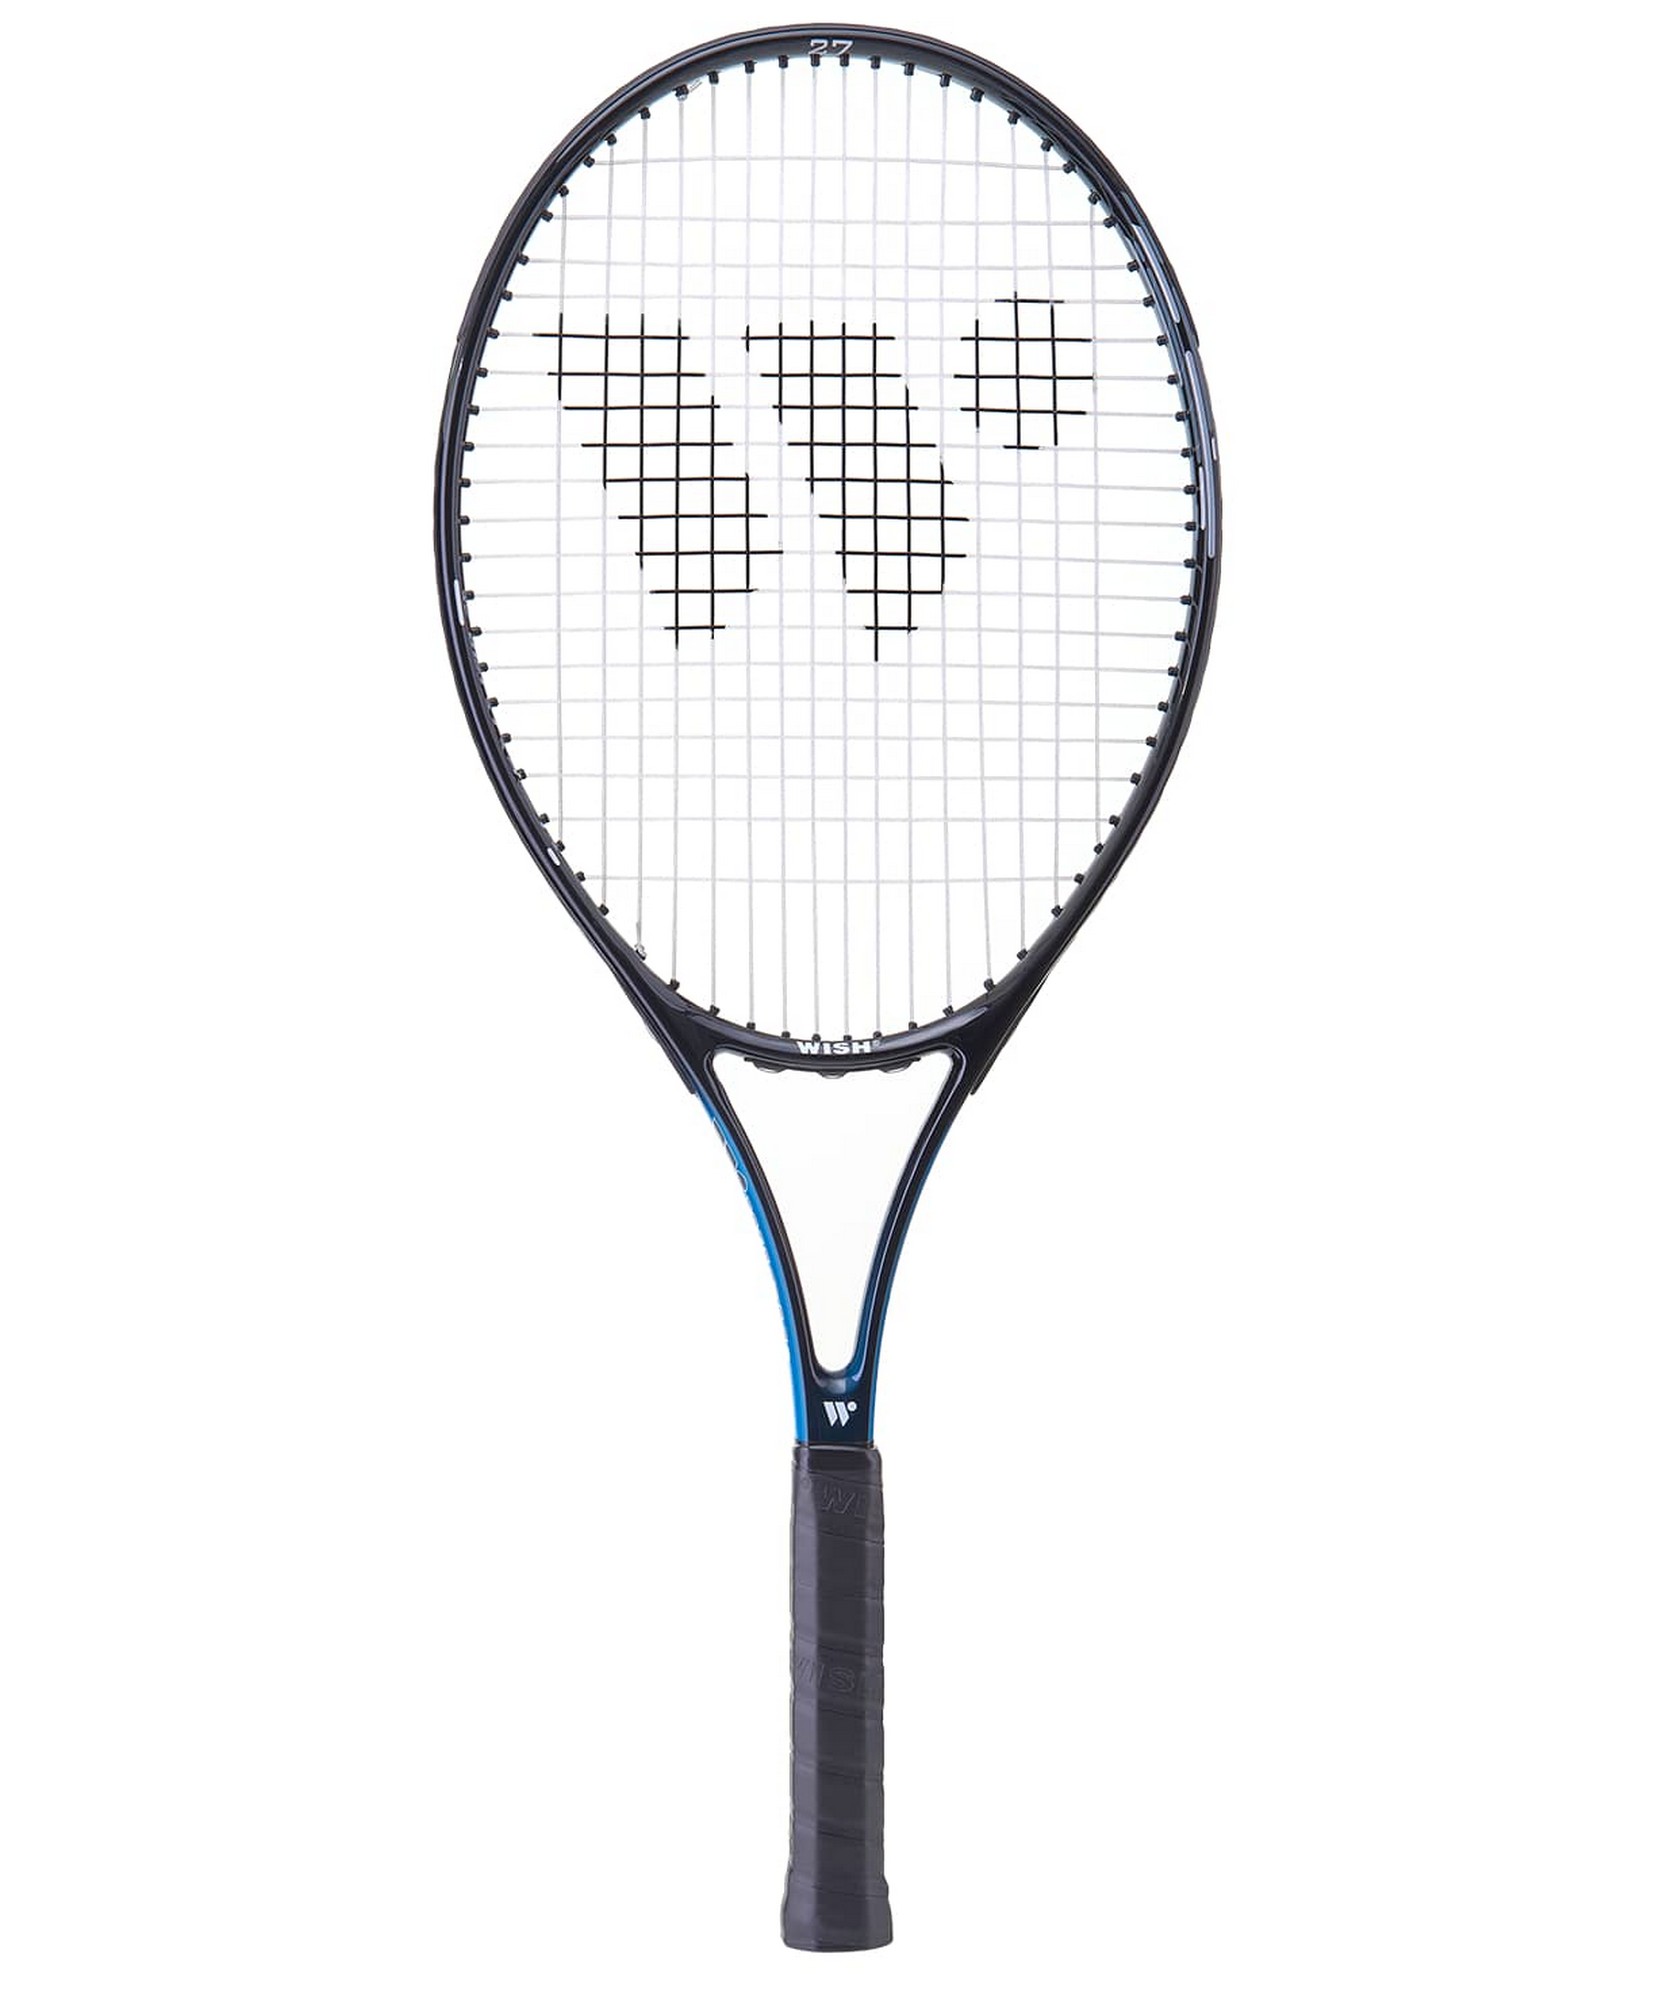 Ракетка для большого тенниса Wish FusionTec 300, 27’’ синий,  - купить со скидкой